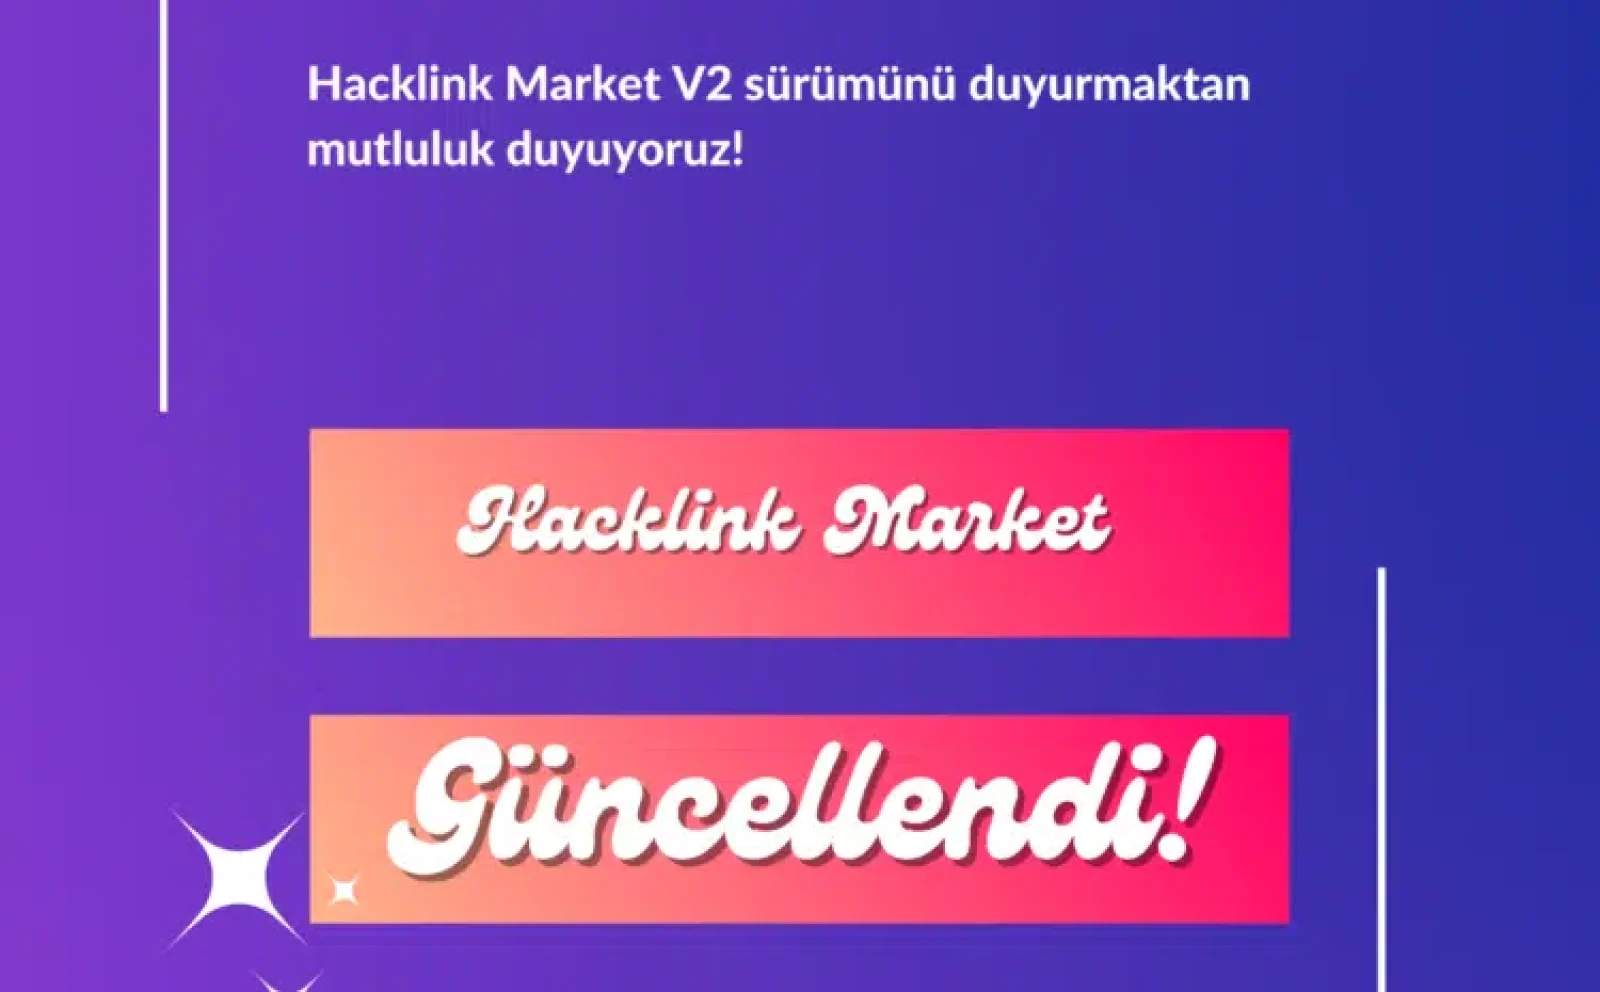 hacklink market güncellendi v2